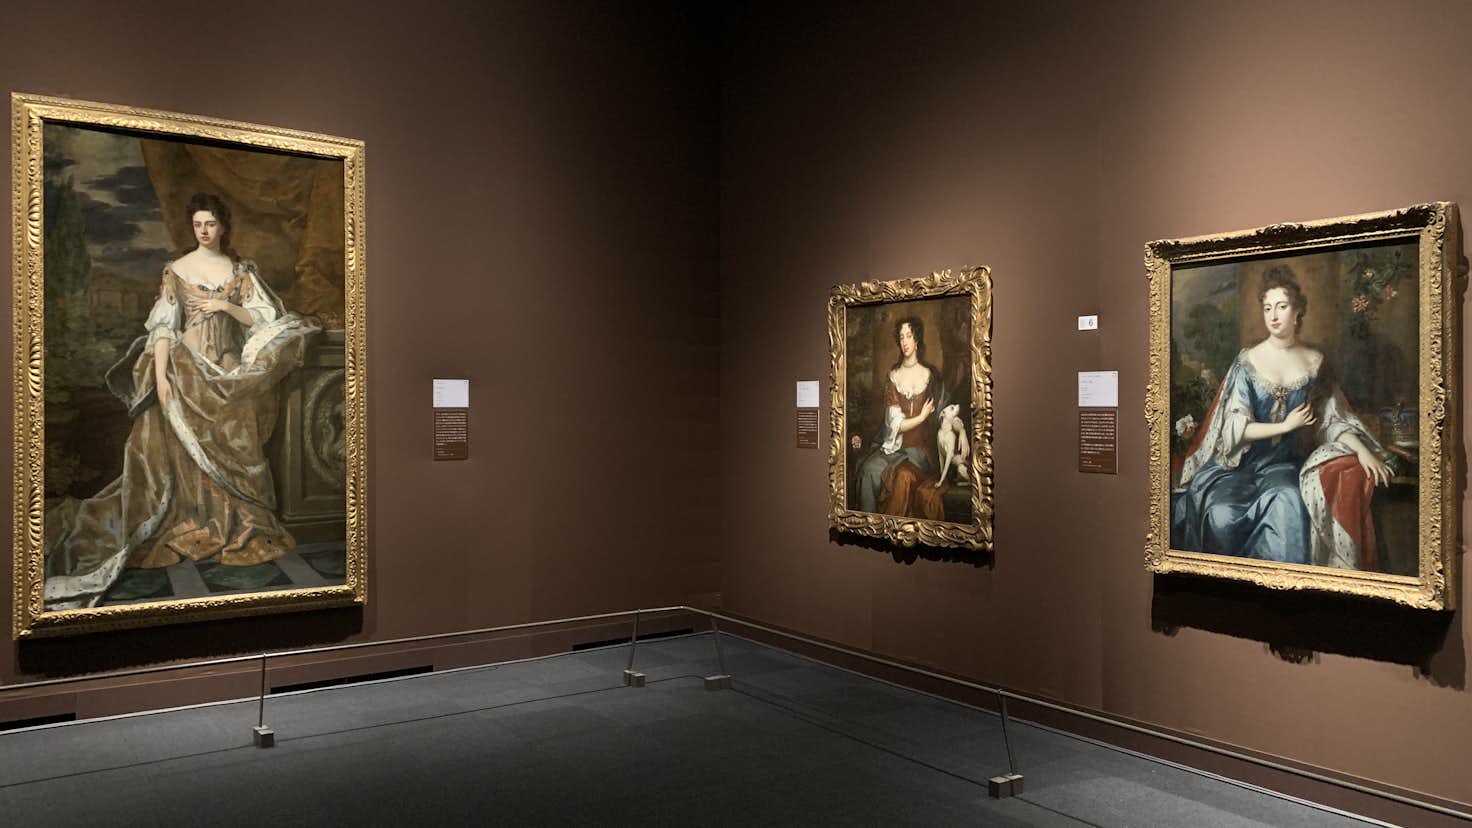 5世紀にわたる英国王室の物語を肖像画で読み解く King Queen展 が上野の森美術館でスタート 美術手帖